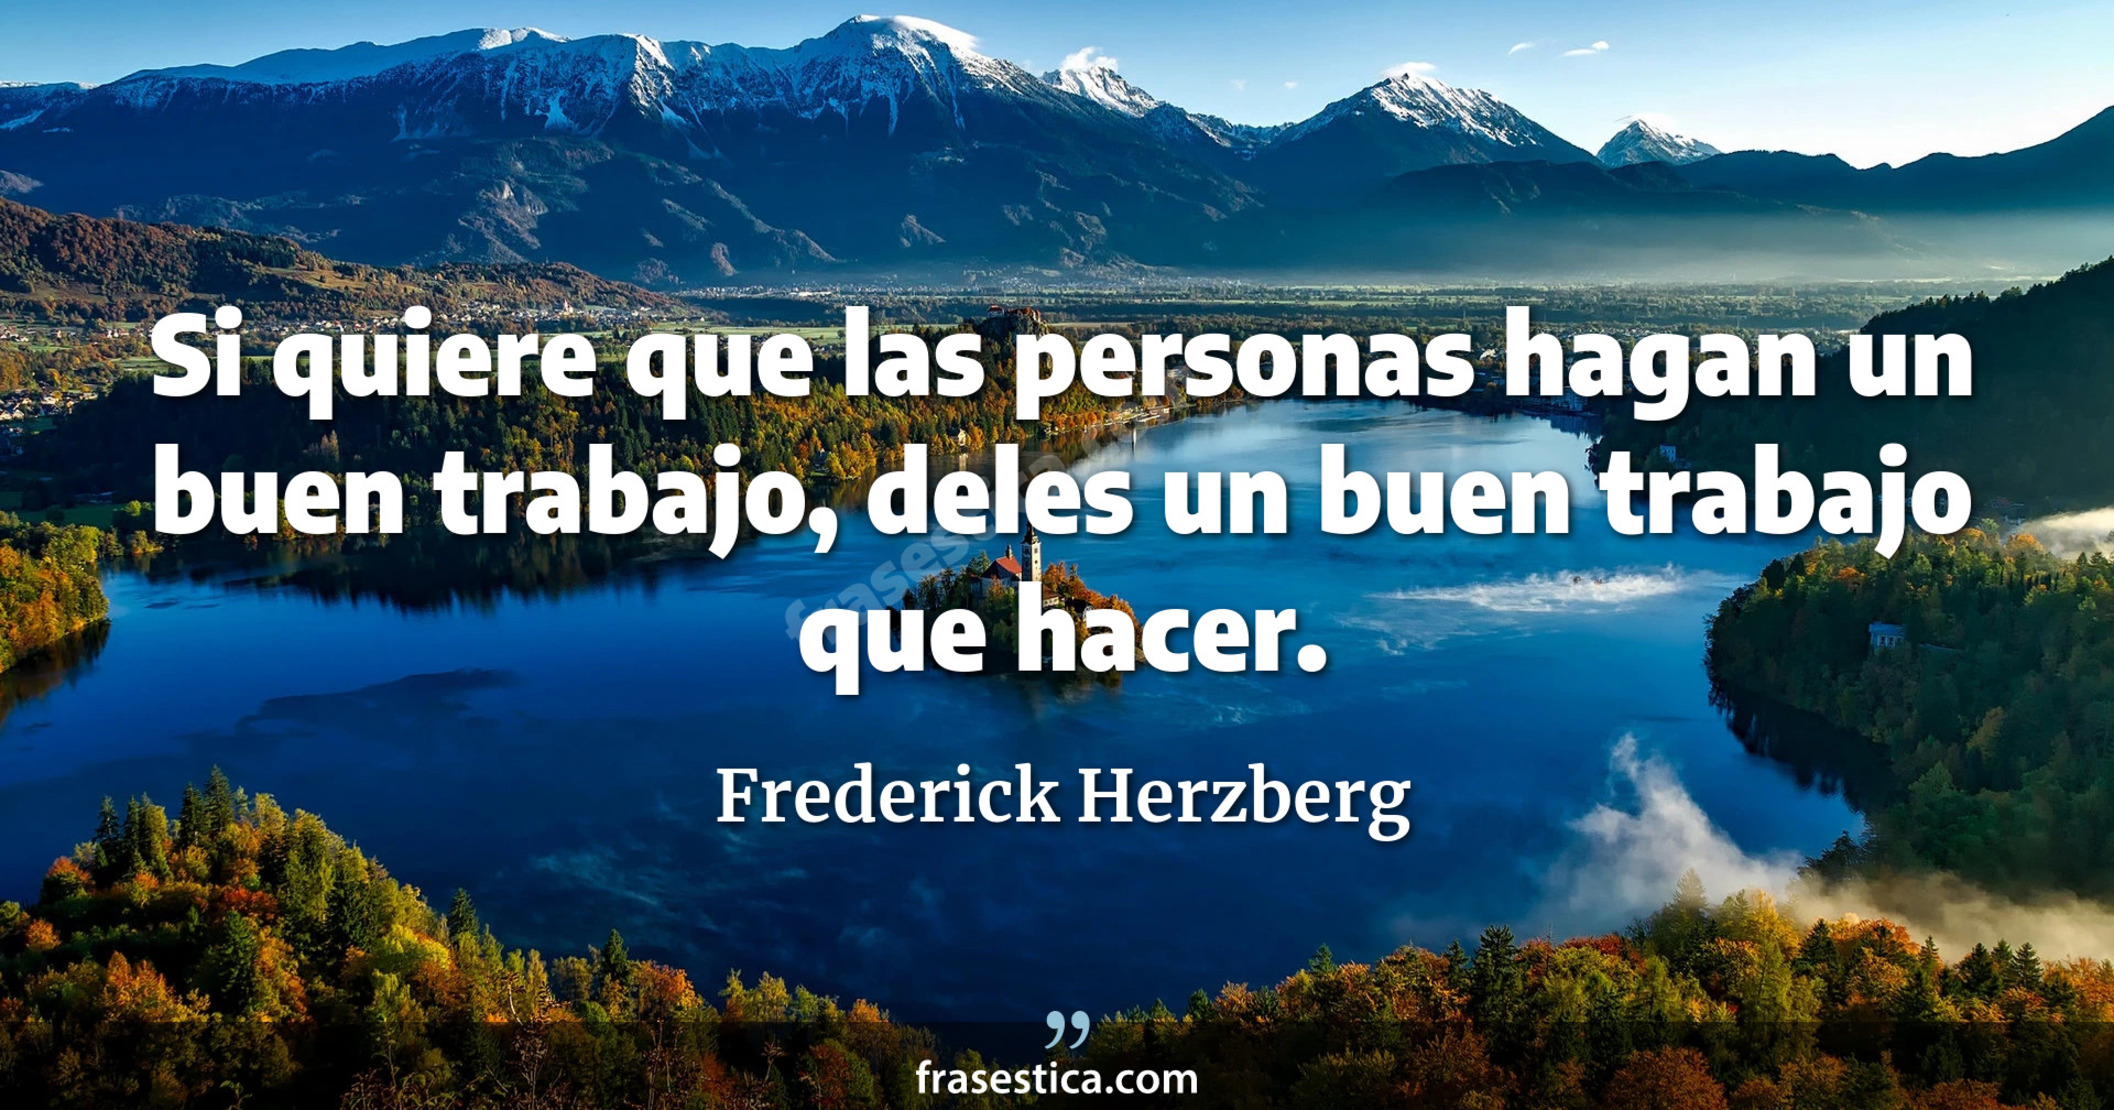 Si quiere que las personas hagan un buen trabajo, deles un buen trabajo que hacer. - Frederick Herzberg